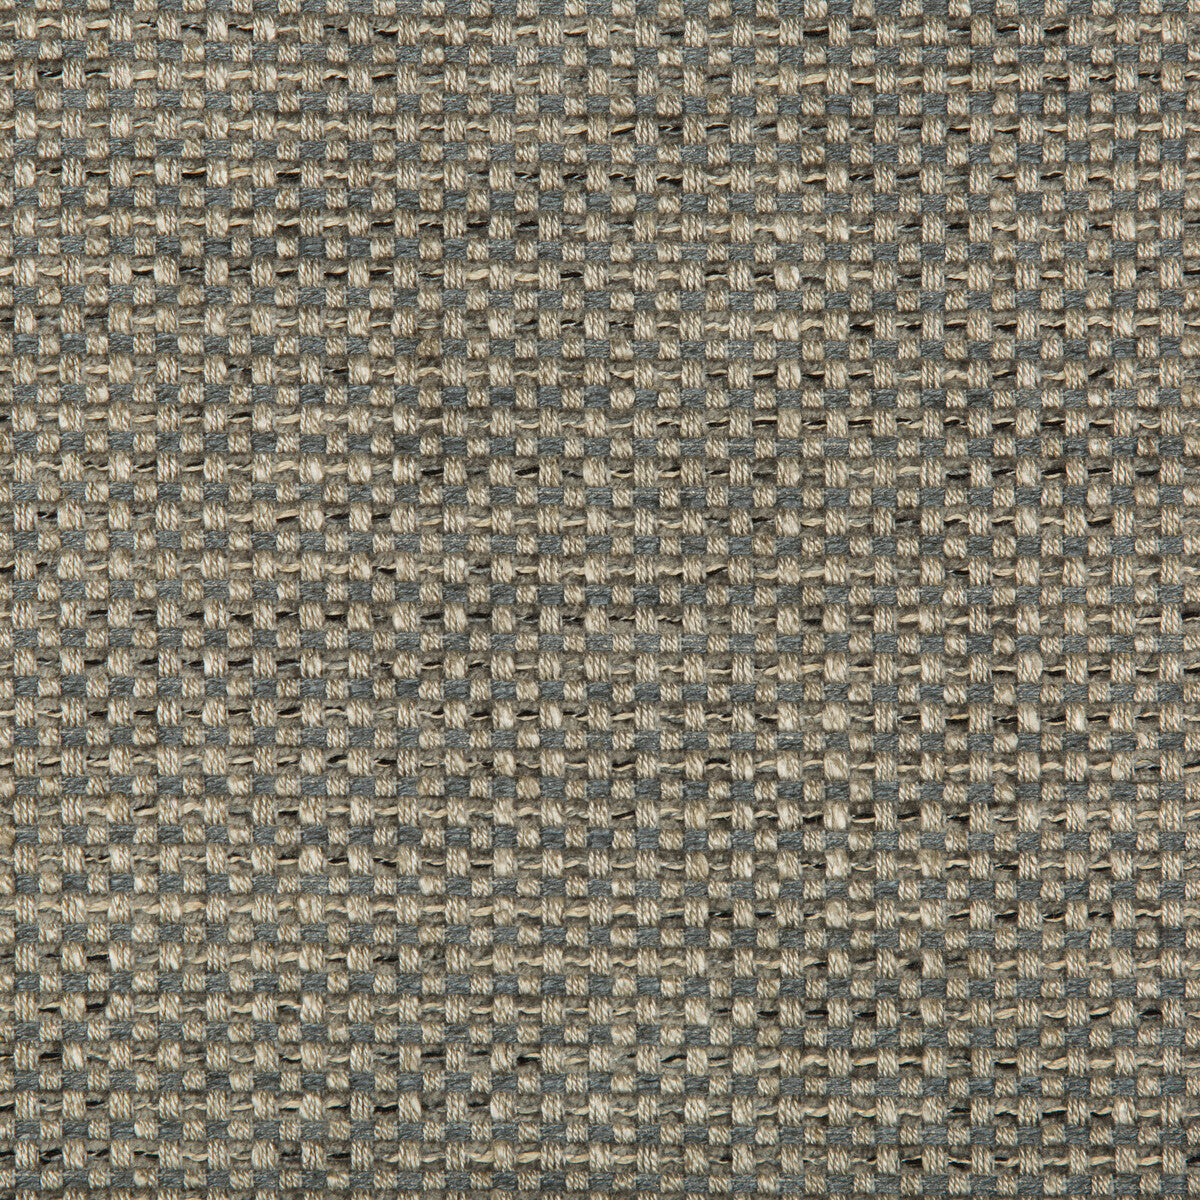 Kravet Design fabric in 35653-11 color - pattern 35653.11.0 - by Kravet Design